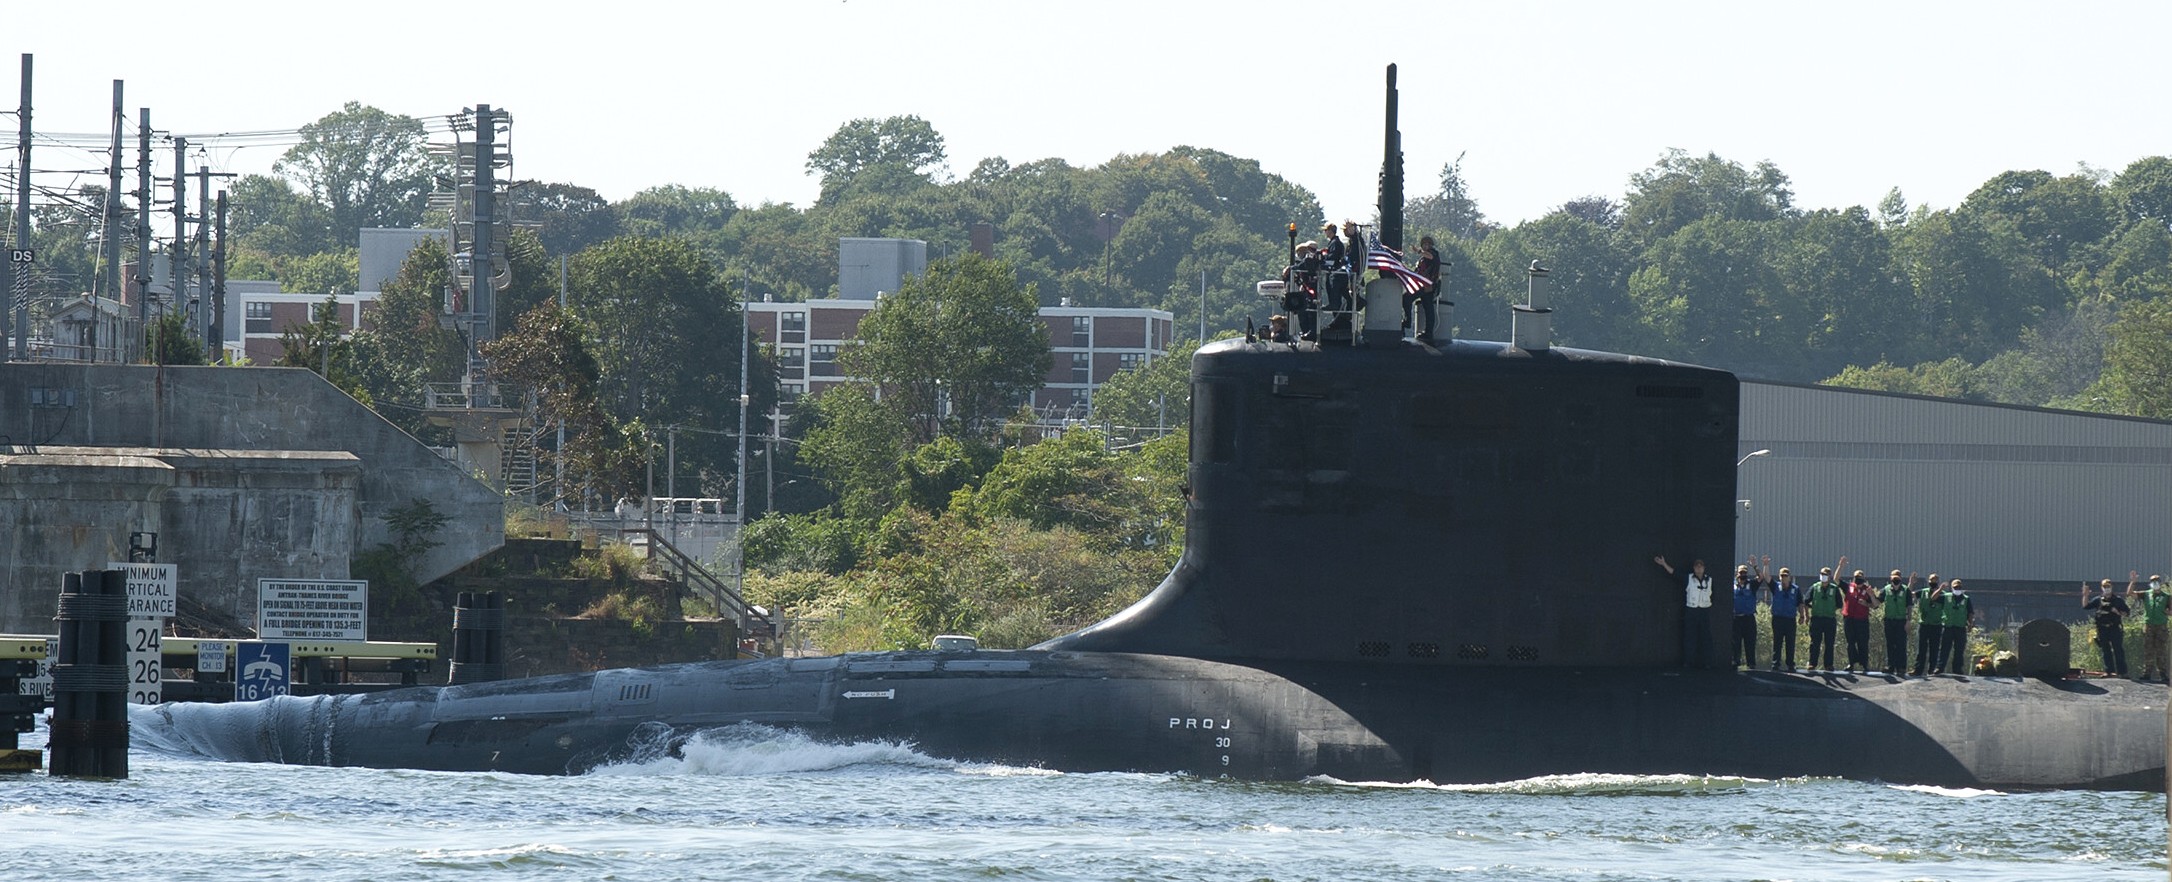 ssn-788 uss colorado virginia class attack submarine us navy 30 subase new london groton connecticut